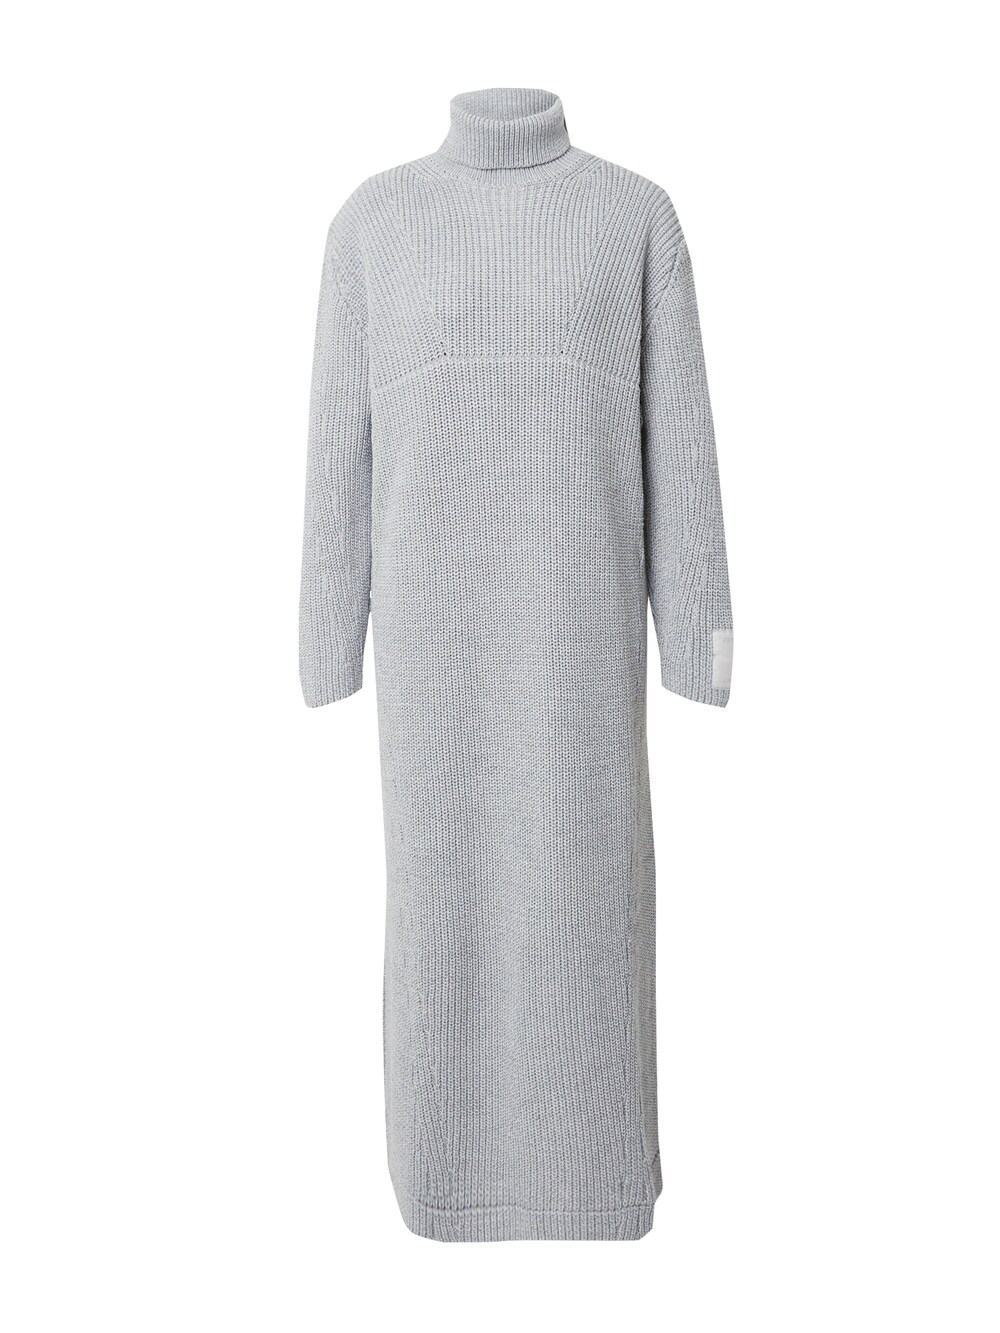 Вязанное платье Karo Kauer, серебристо-серый